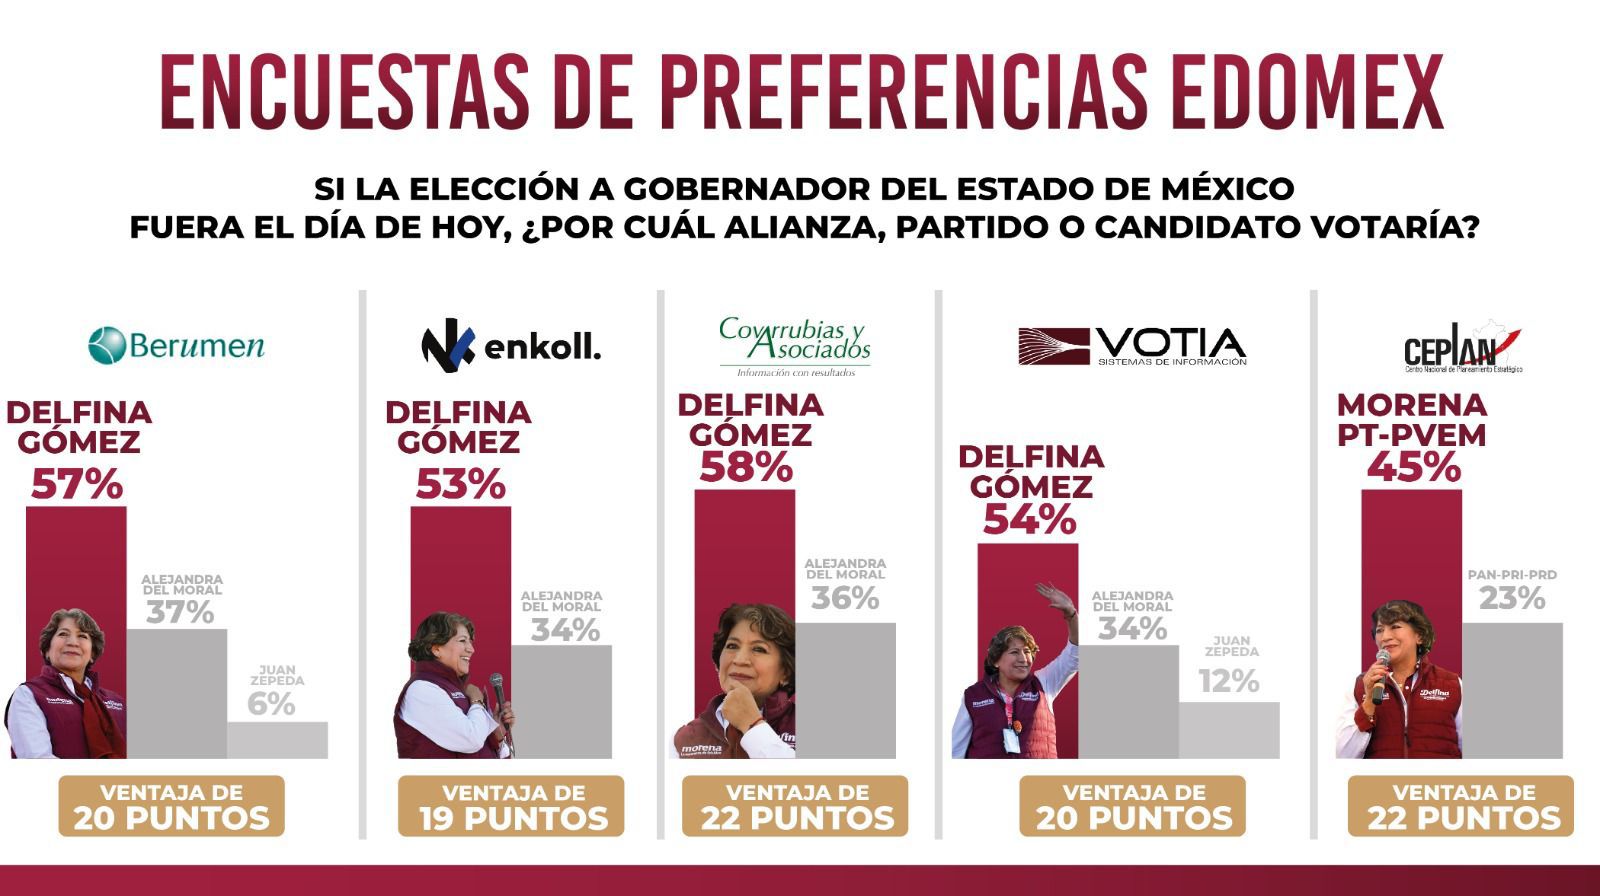 Aventaja Delfina Gómez en encuestas de preferencia de voto en el Estado de México.